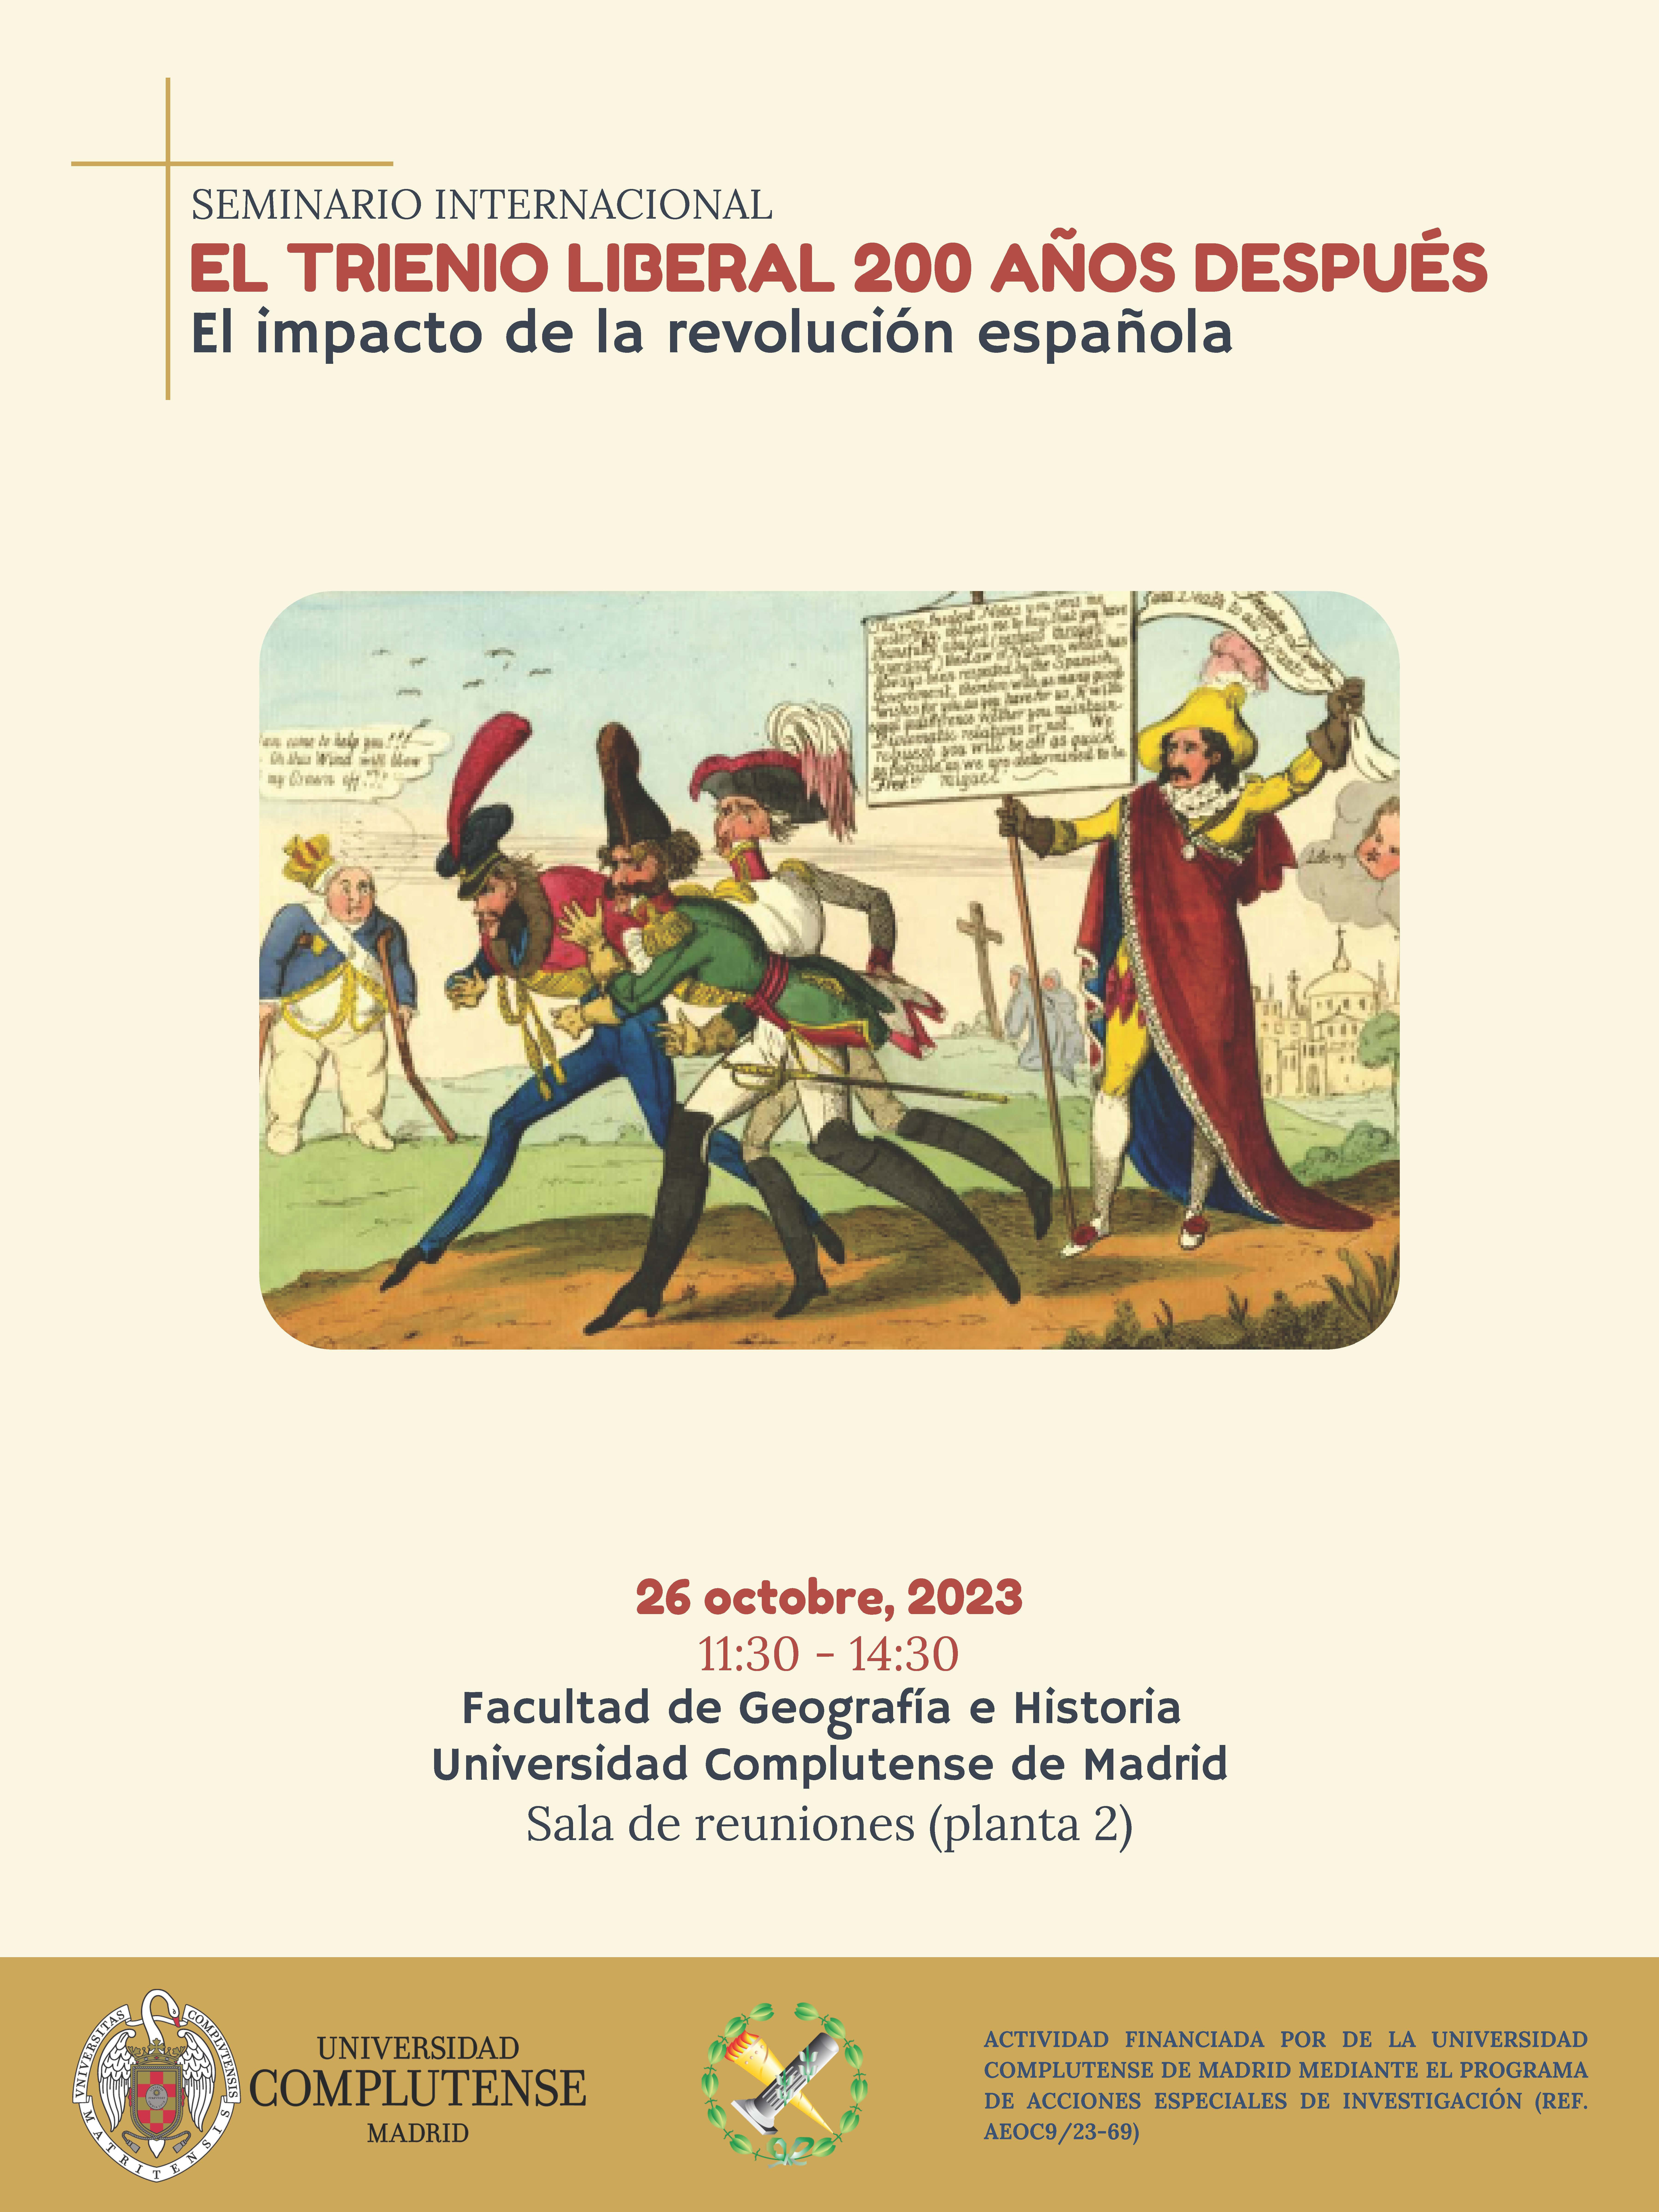 Seminario Internacional El Trienio Liberal 200 años después. El impacto de la revolución española (26.10.2023)